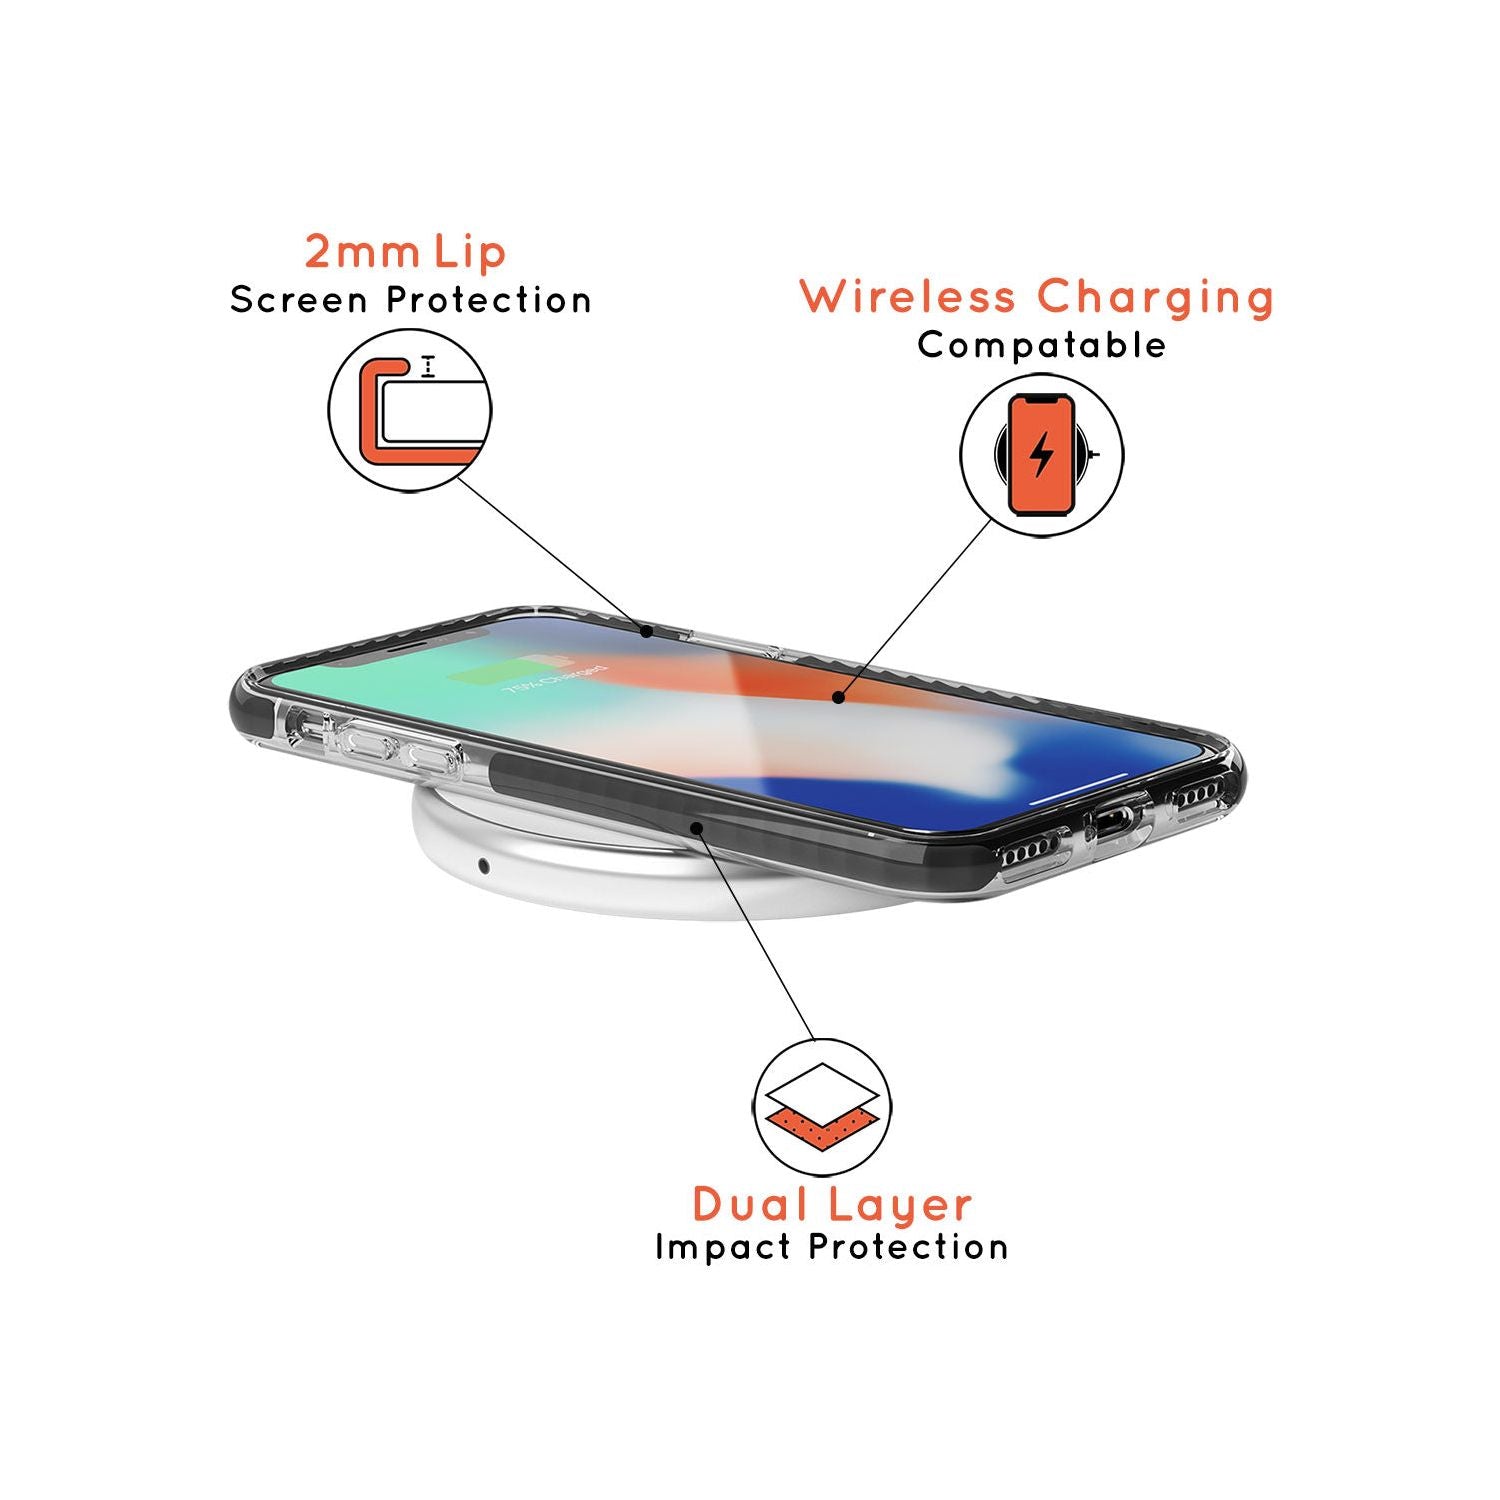 Taurus Emblem - Transparent Design Black Impact Phone Case for iPhone 11 Pro Max